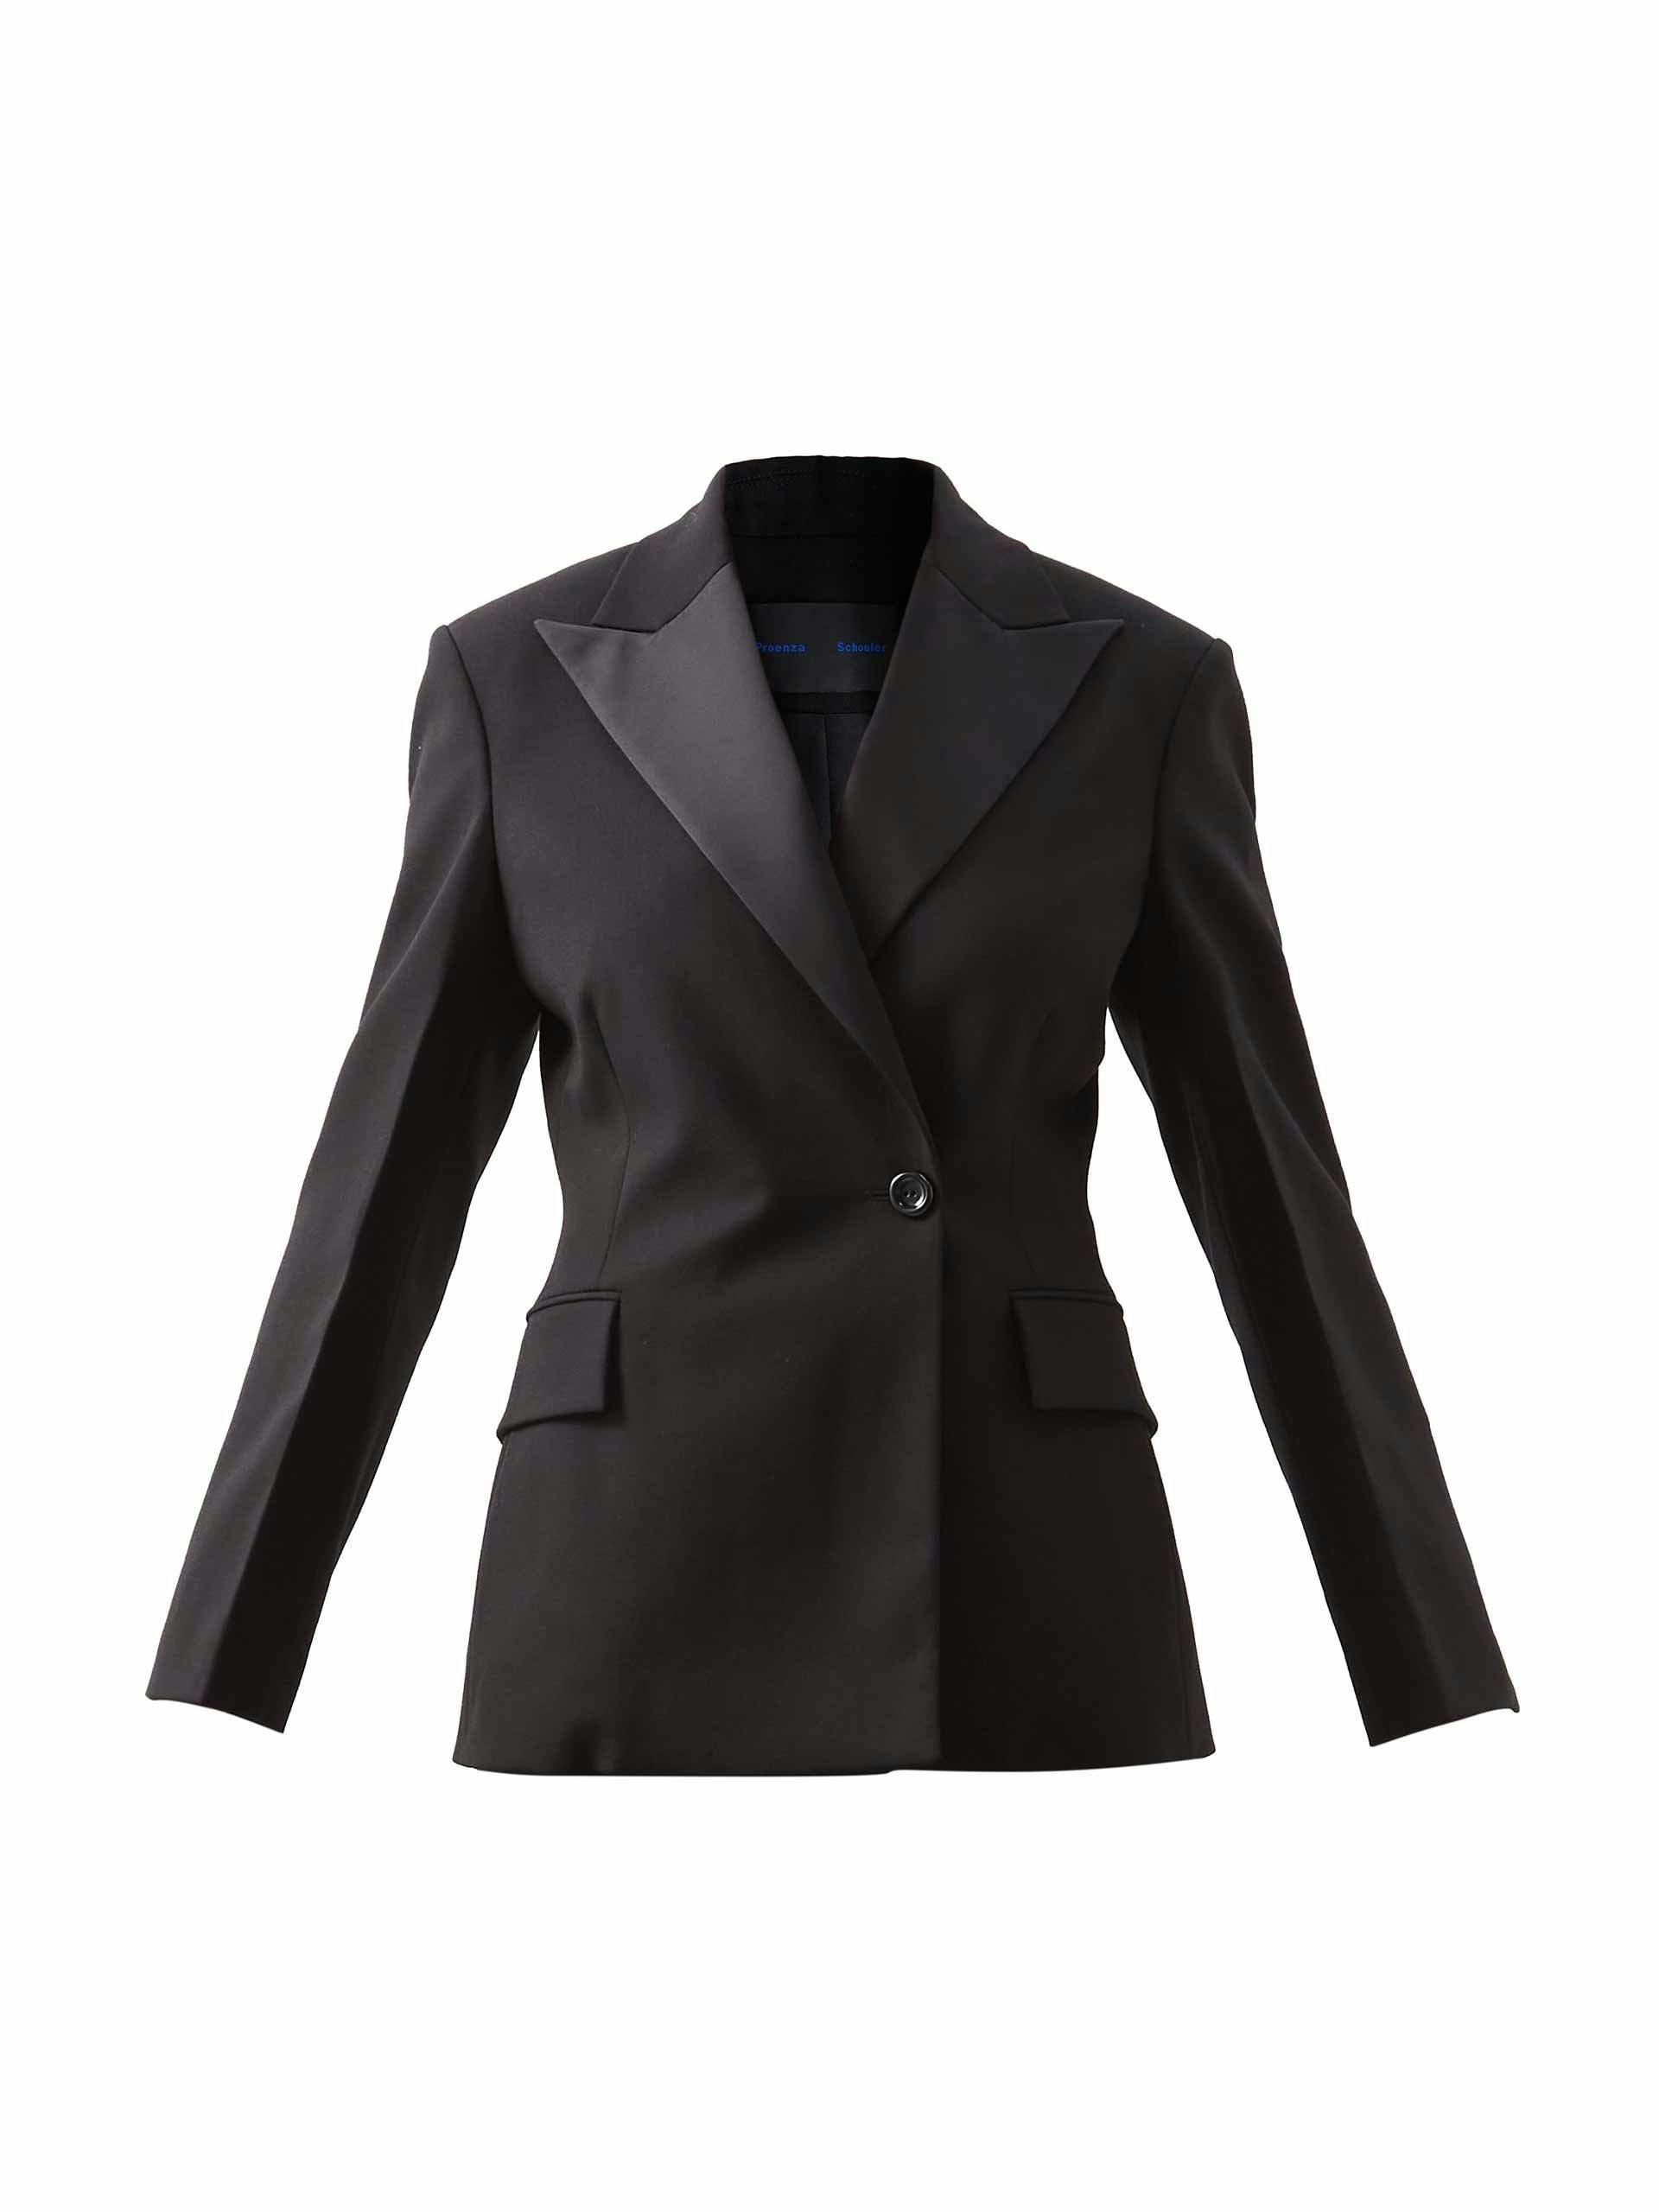 Wool-blend tuxedo suit jacket